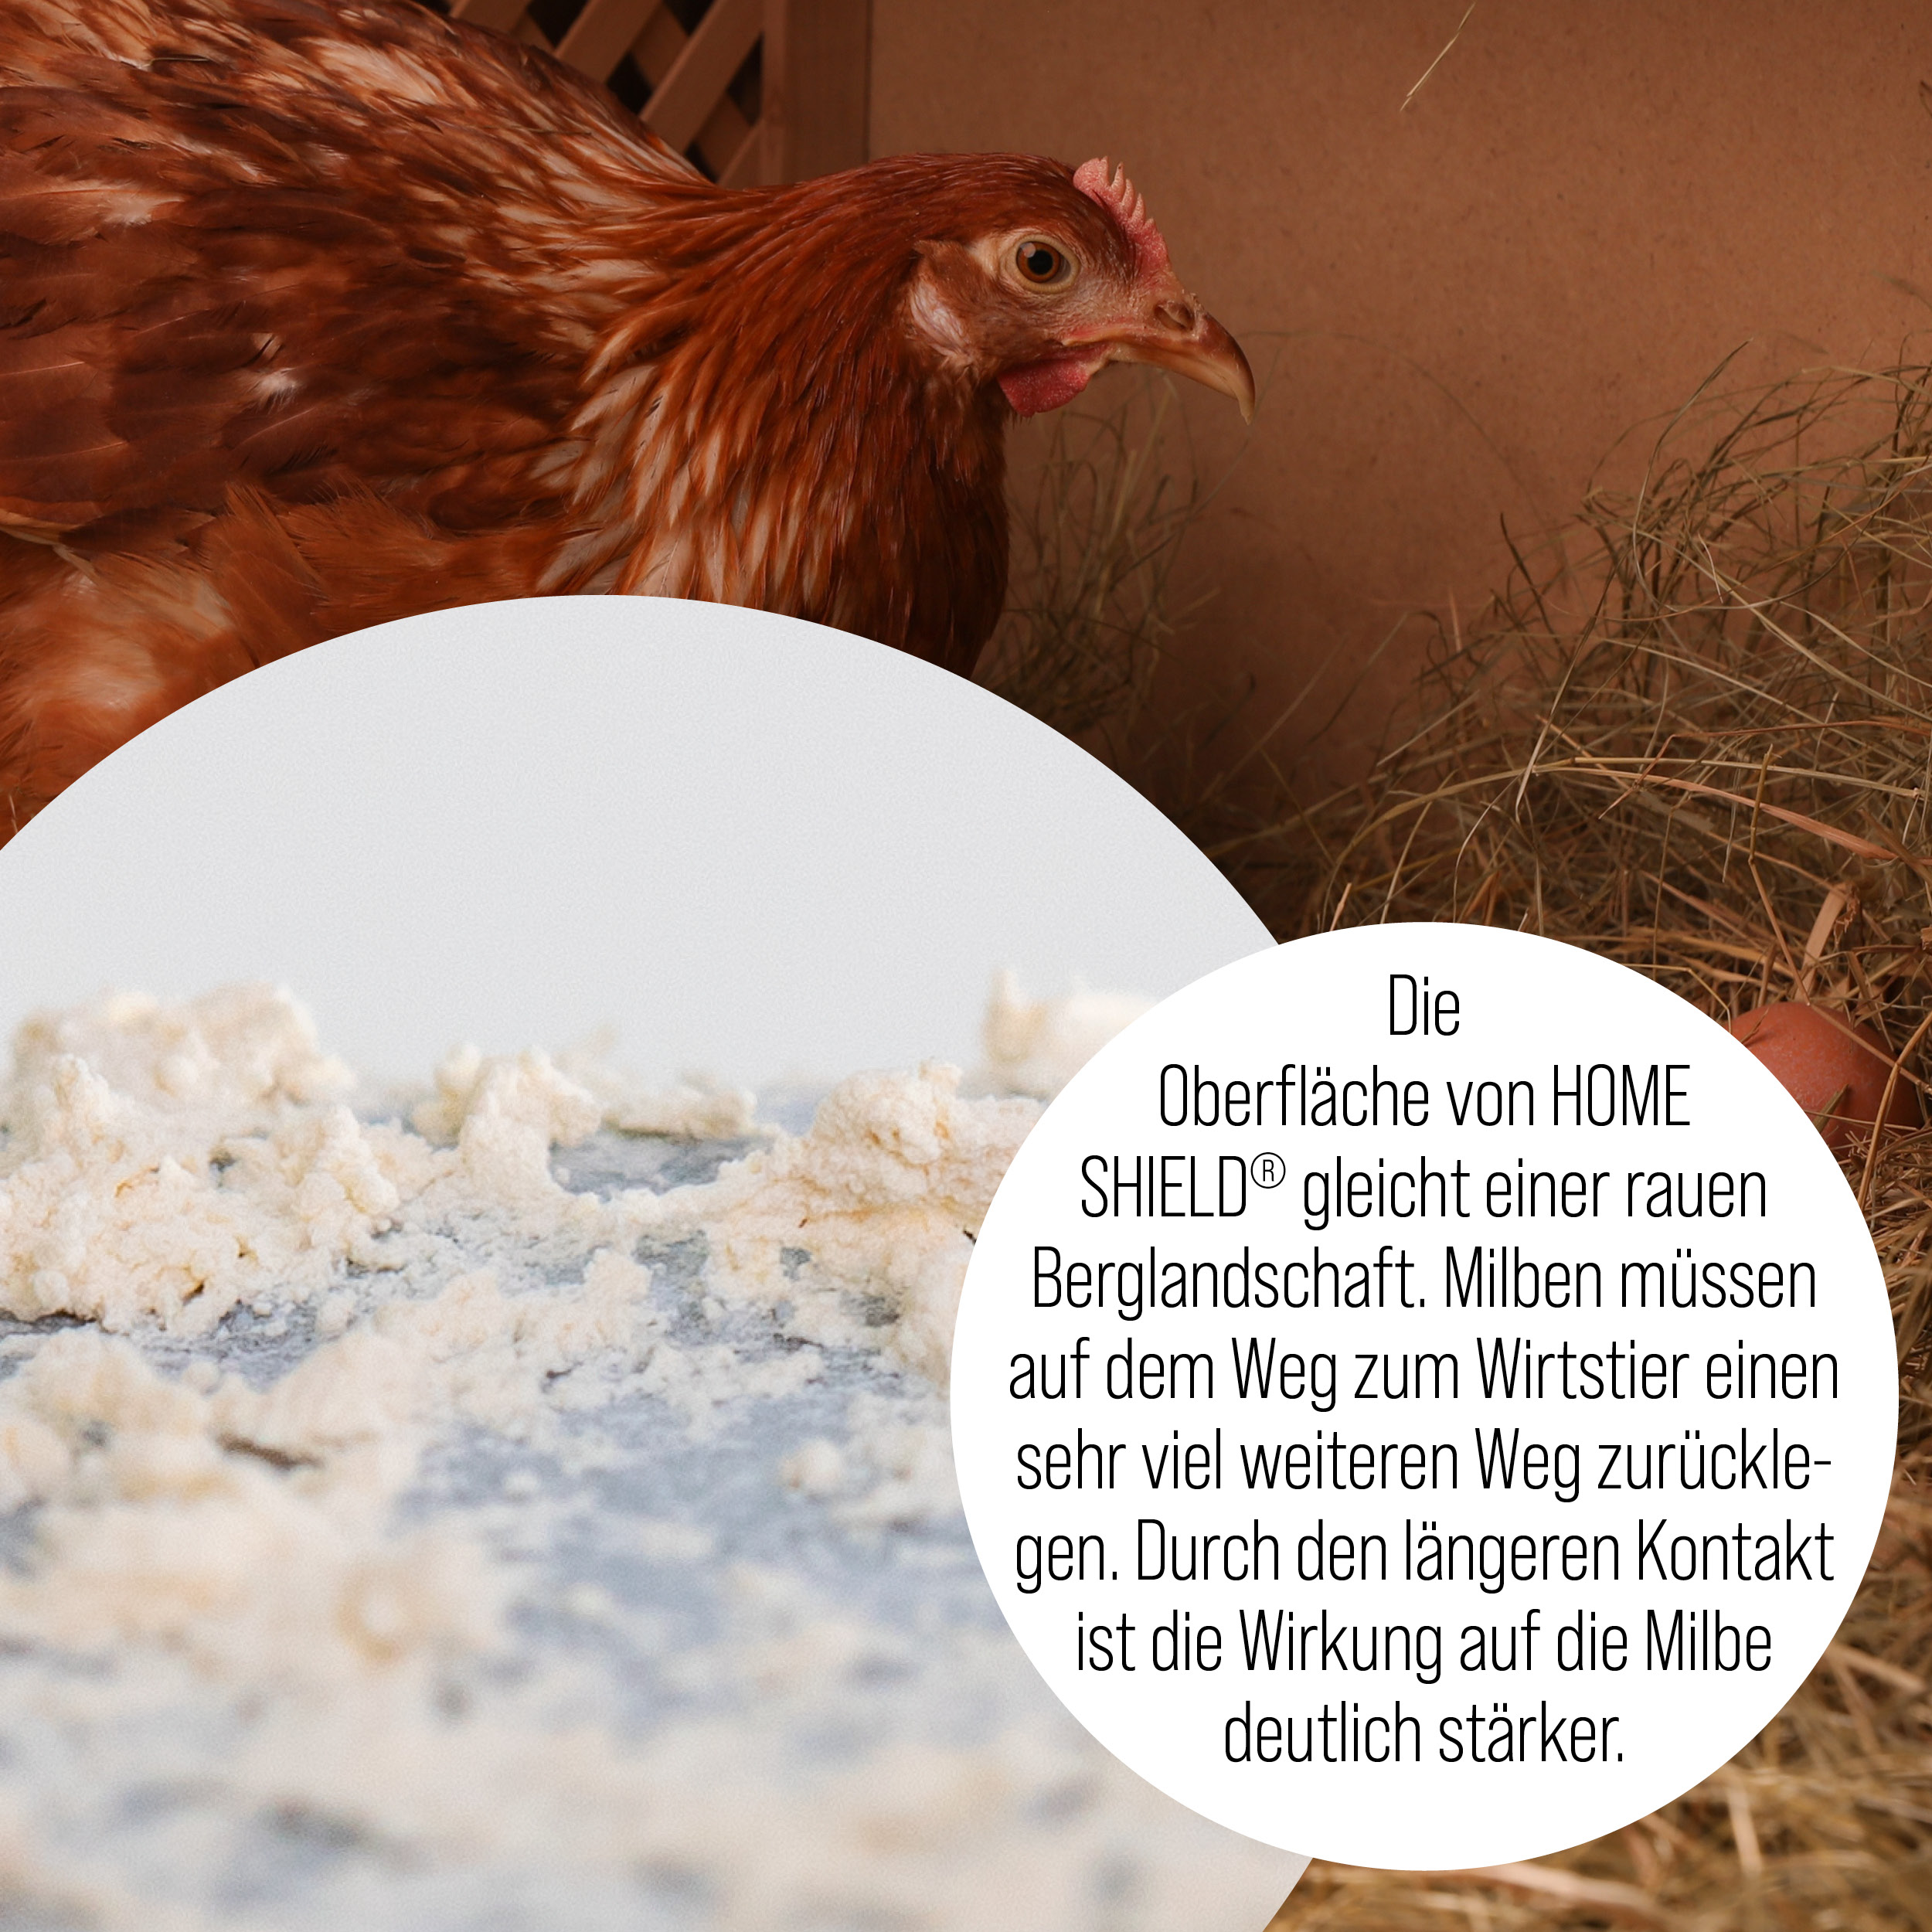 Produktoberfläche von Fossil Shield und Mitbewerber mit tropfen im Kampf gegen die rote Vogelmilbe im Hühnerstall für Milbenprophylaxe und Milbennachbehandlung